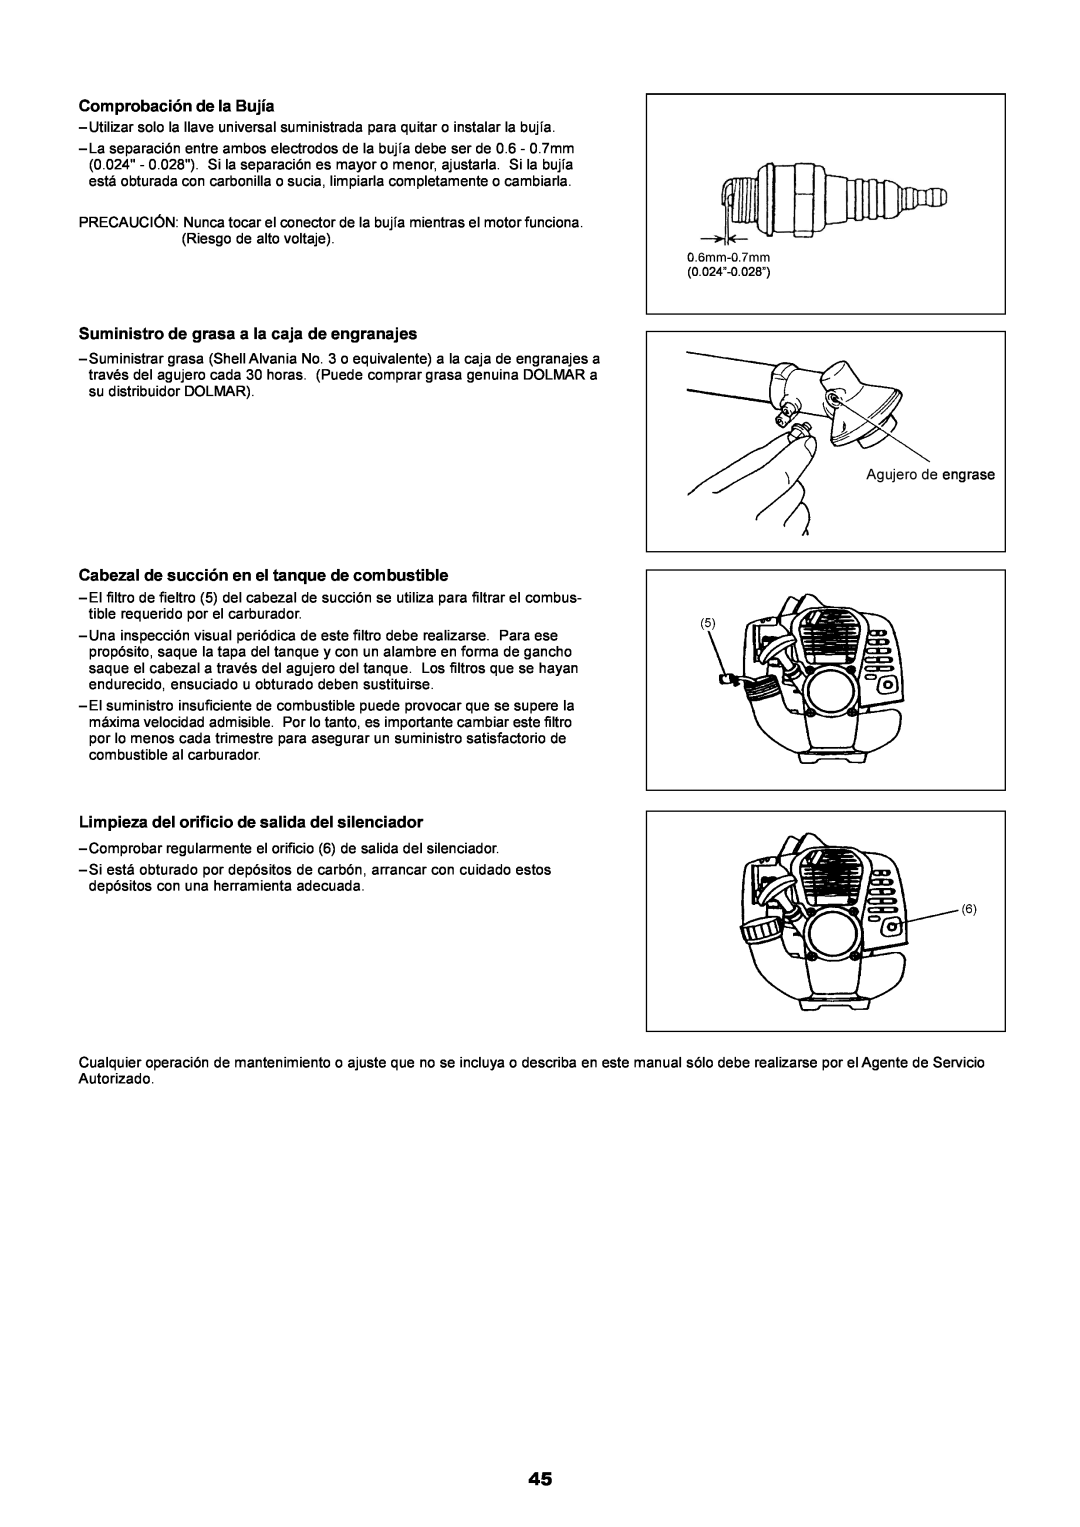 Dolmar PE-251 instruction manual Comprobación de la Bujía, Suministro de grasa a la caja de engranajes 